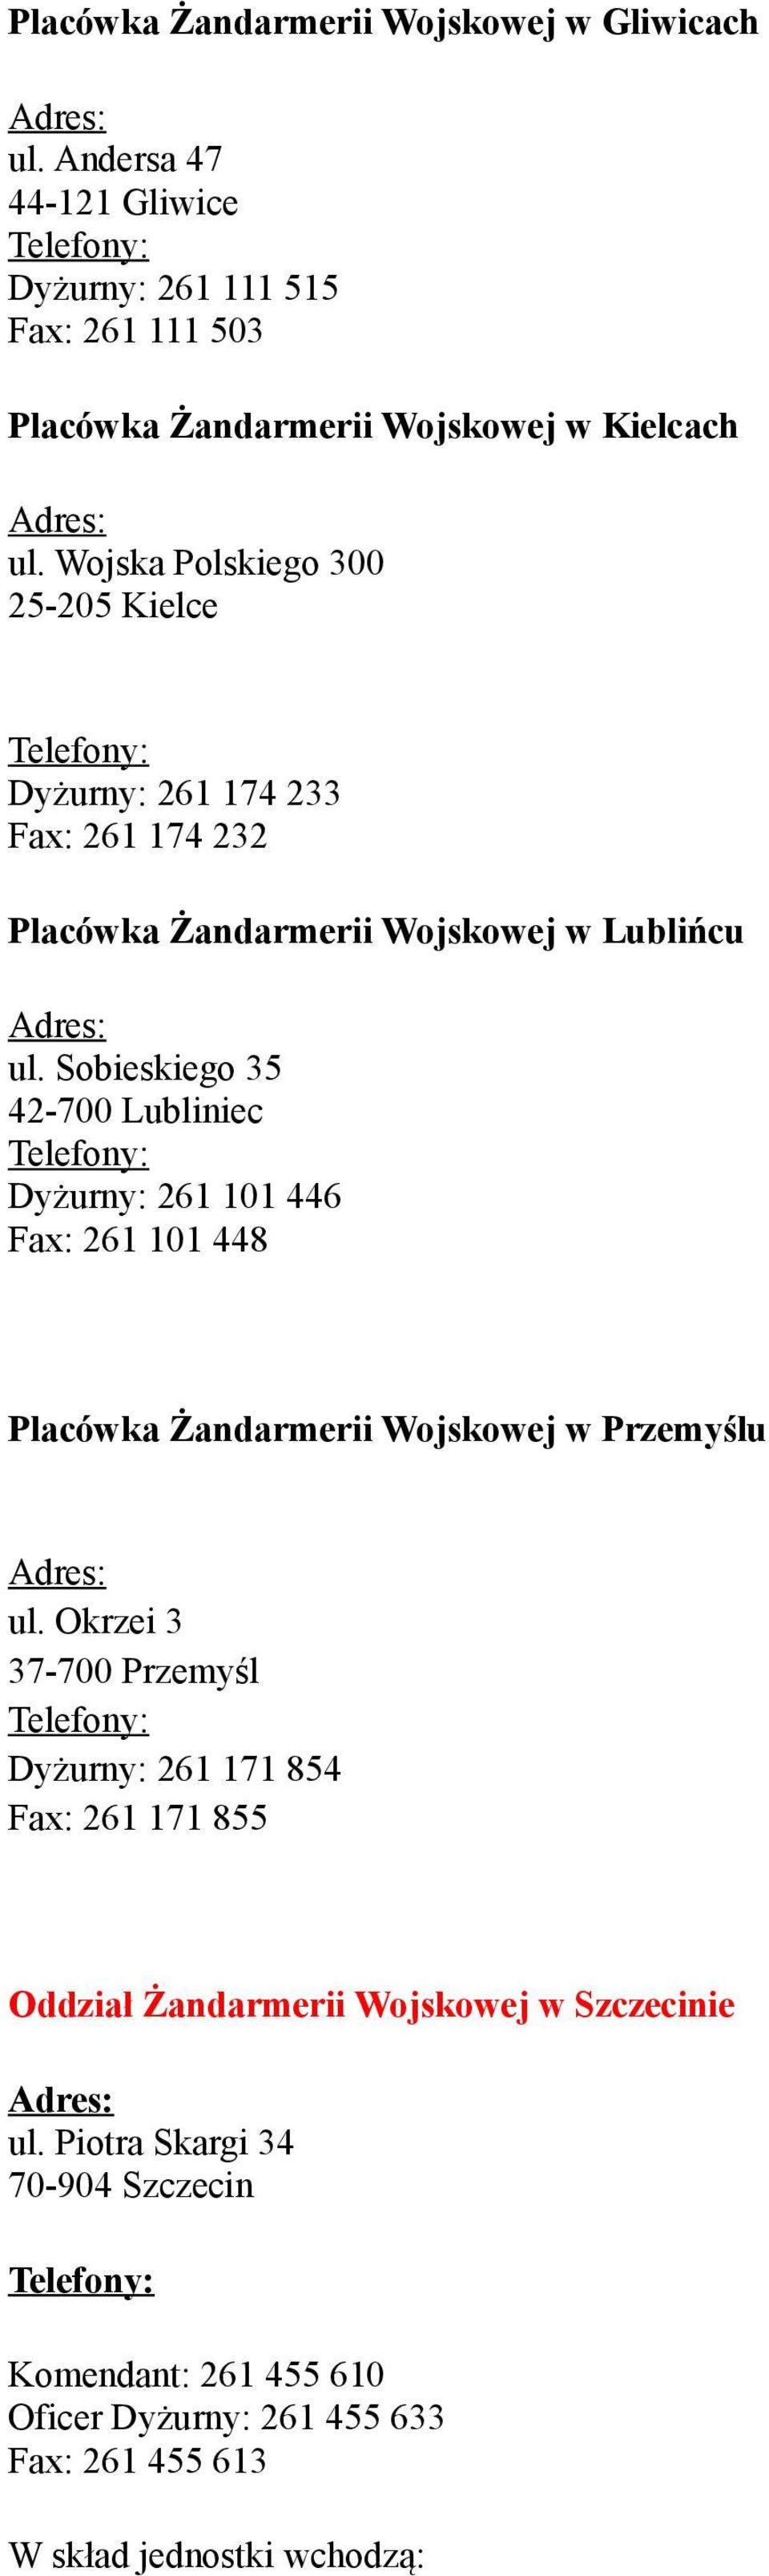 Sobieskiego 35 42-700 Lubliniec Dyżurny: 261 101 446 Fax: 261 101 448 Placówka Żandarmerii Wojskowej w Przemyślu ul.